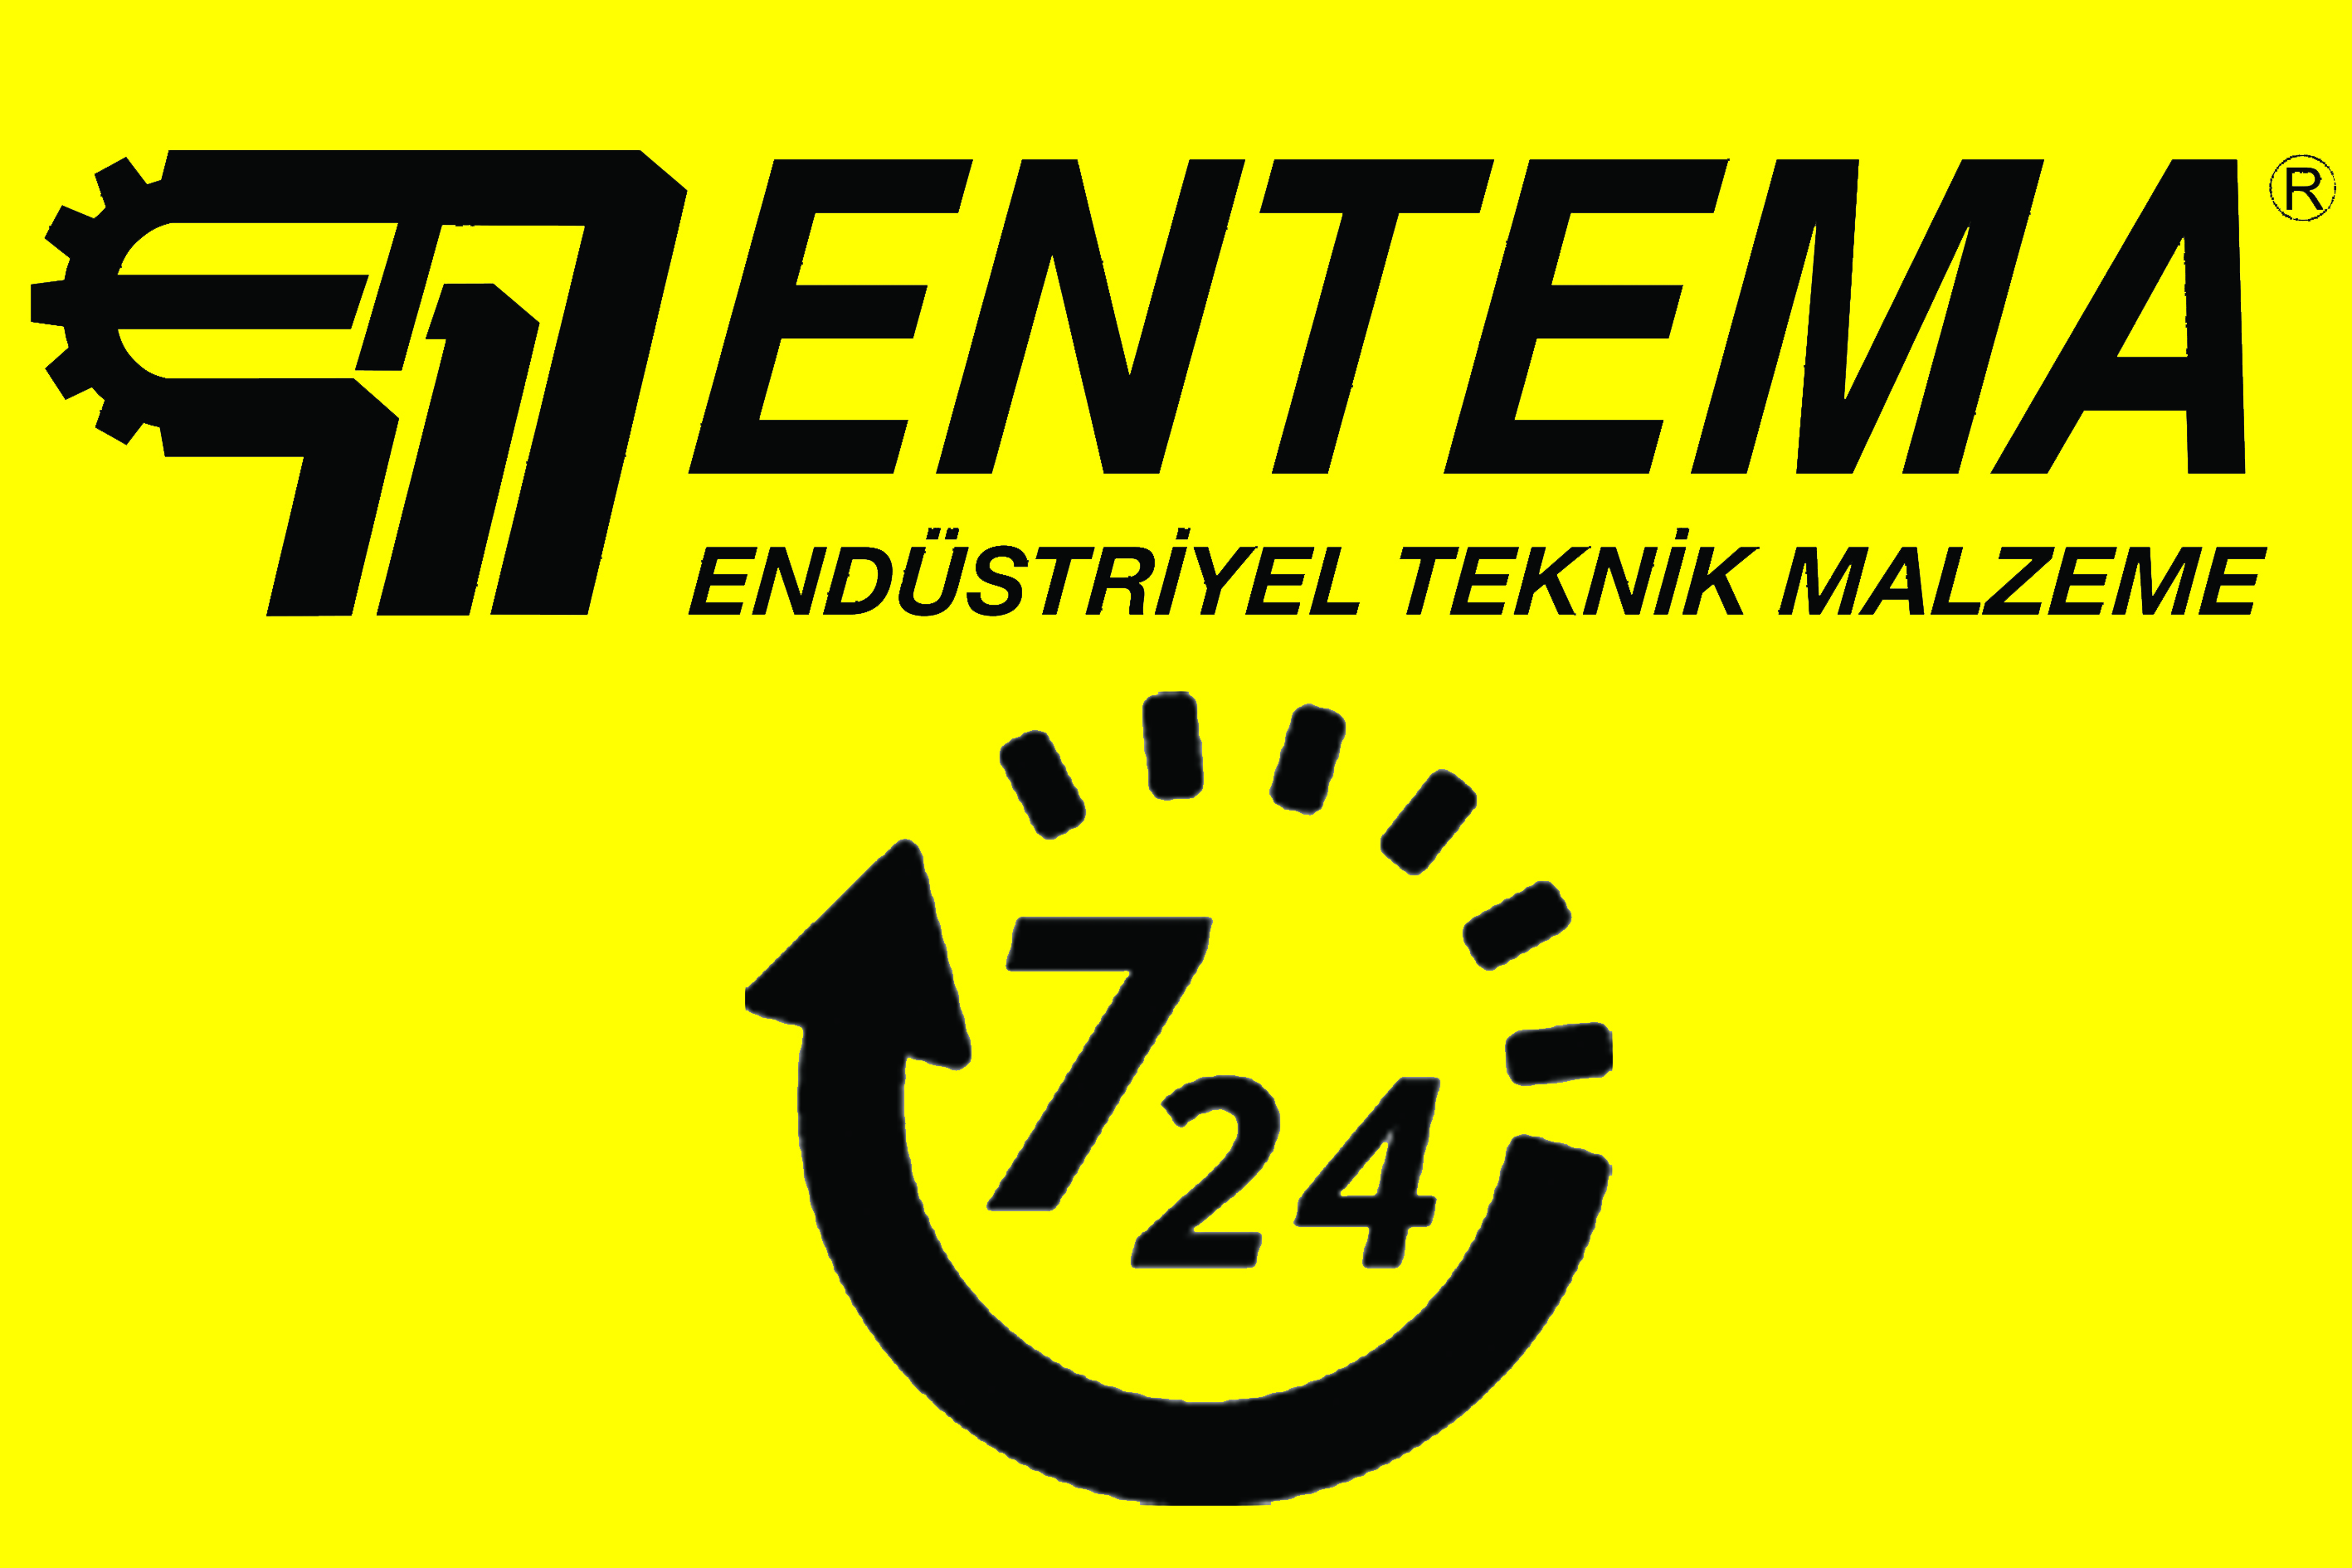 Entema724